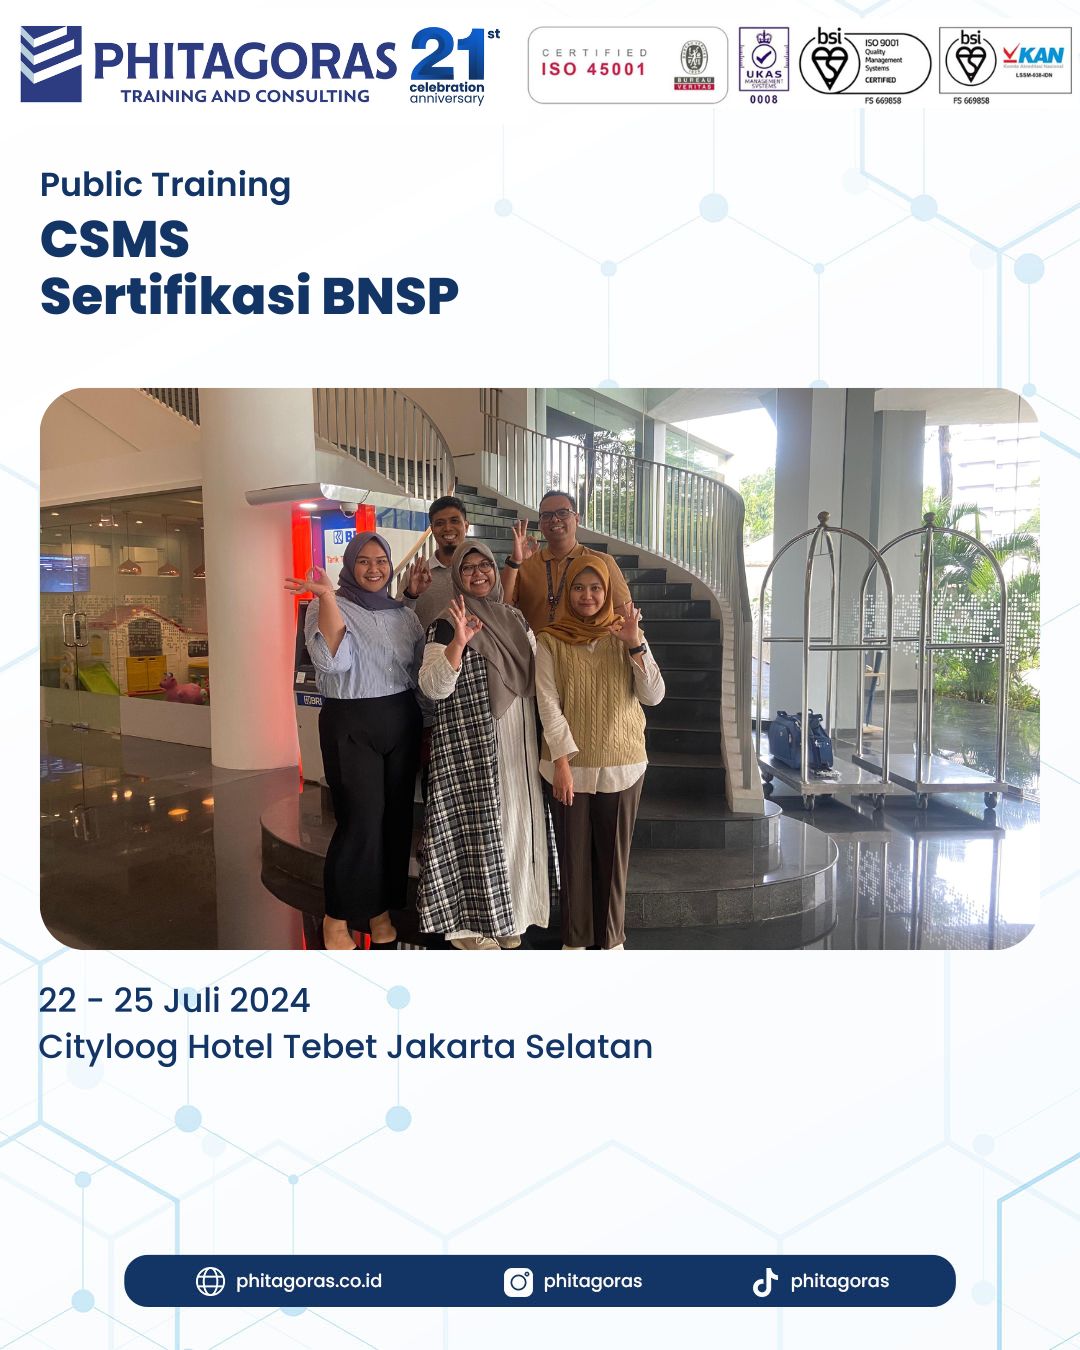 Public Training CSMS Sertifikasi BNSP Cityloog Hotel Tebet Jakarta Selatan Tanggal 22 - 25 Juli 2024